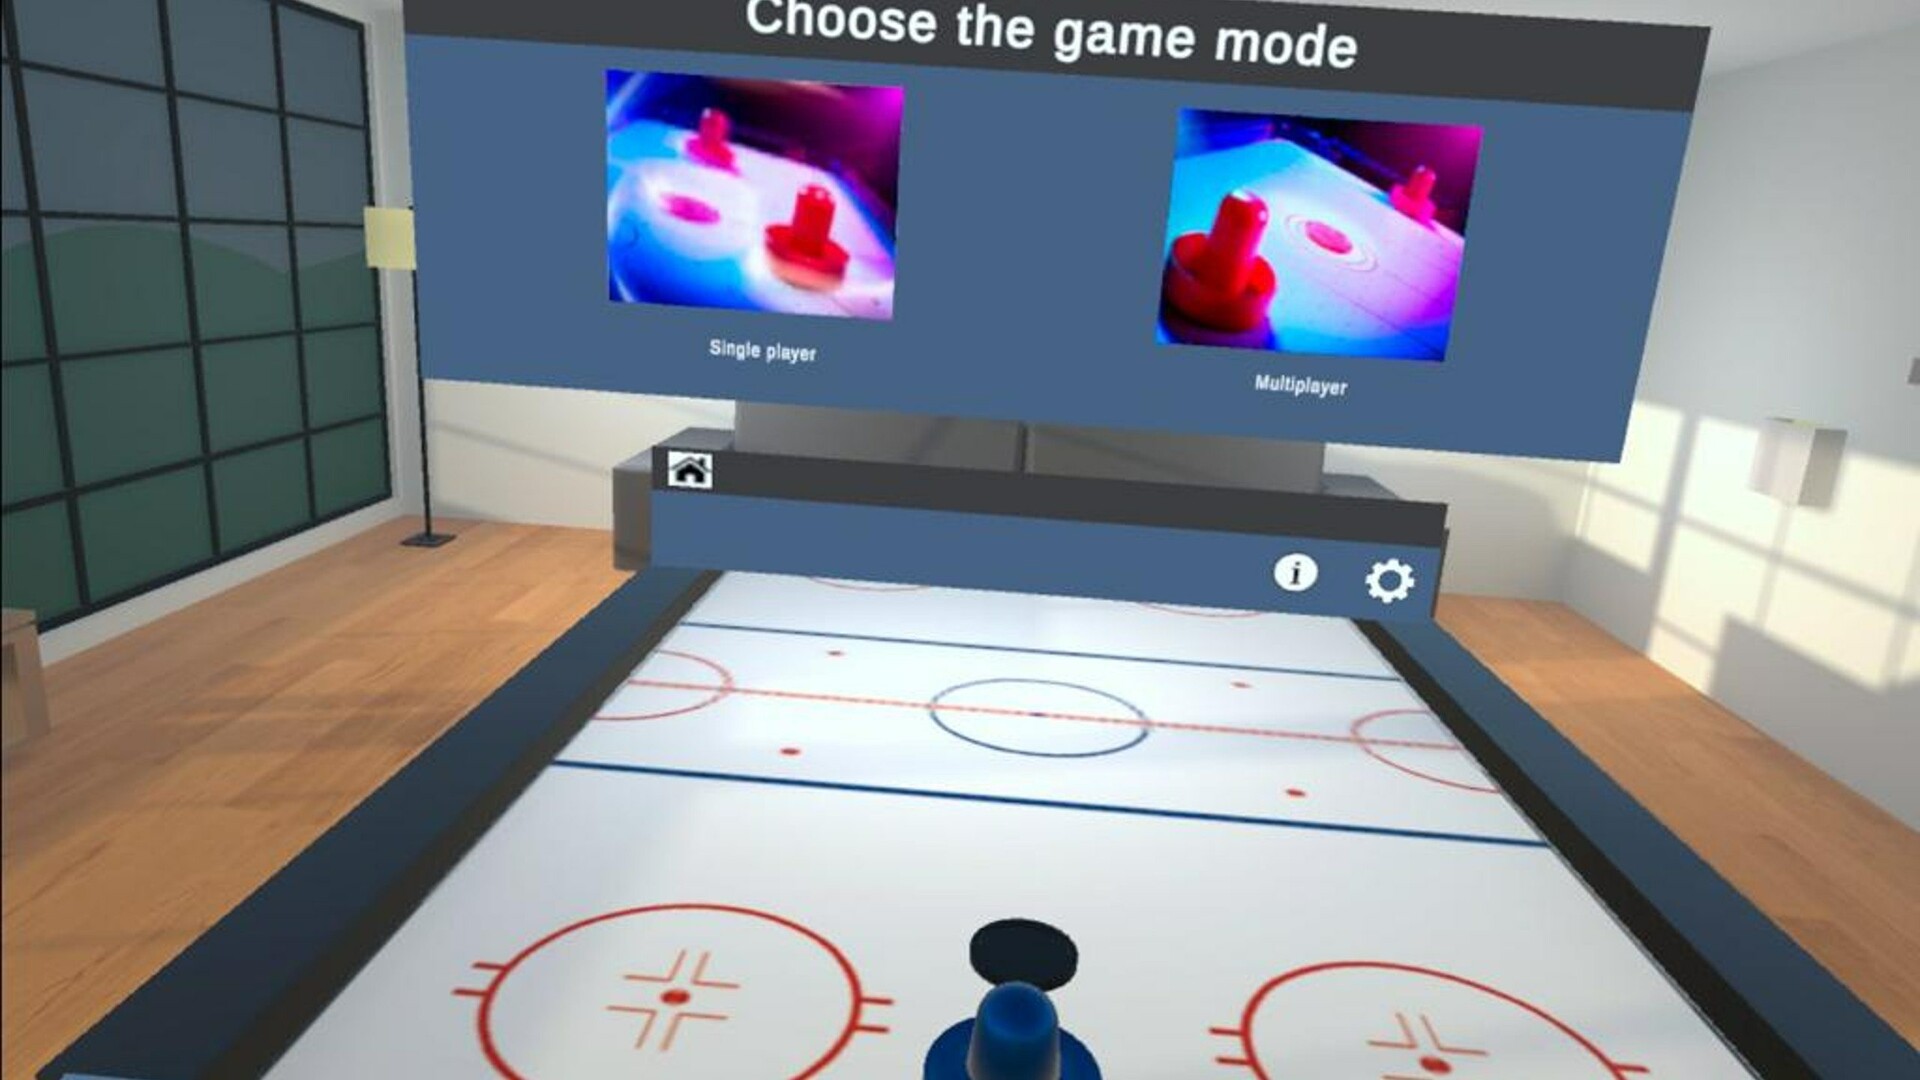 Air Hockey VR Steam